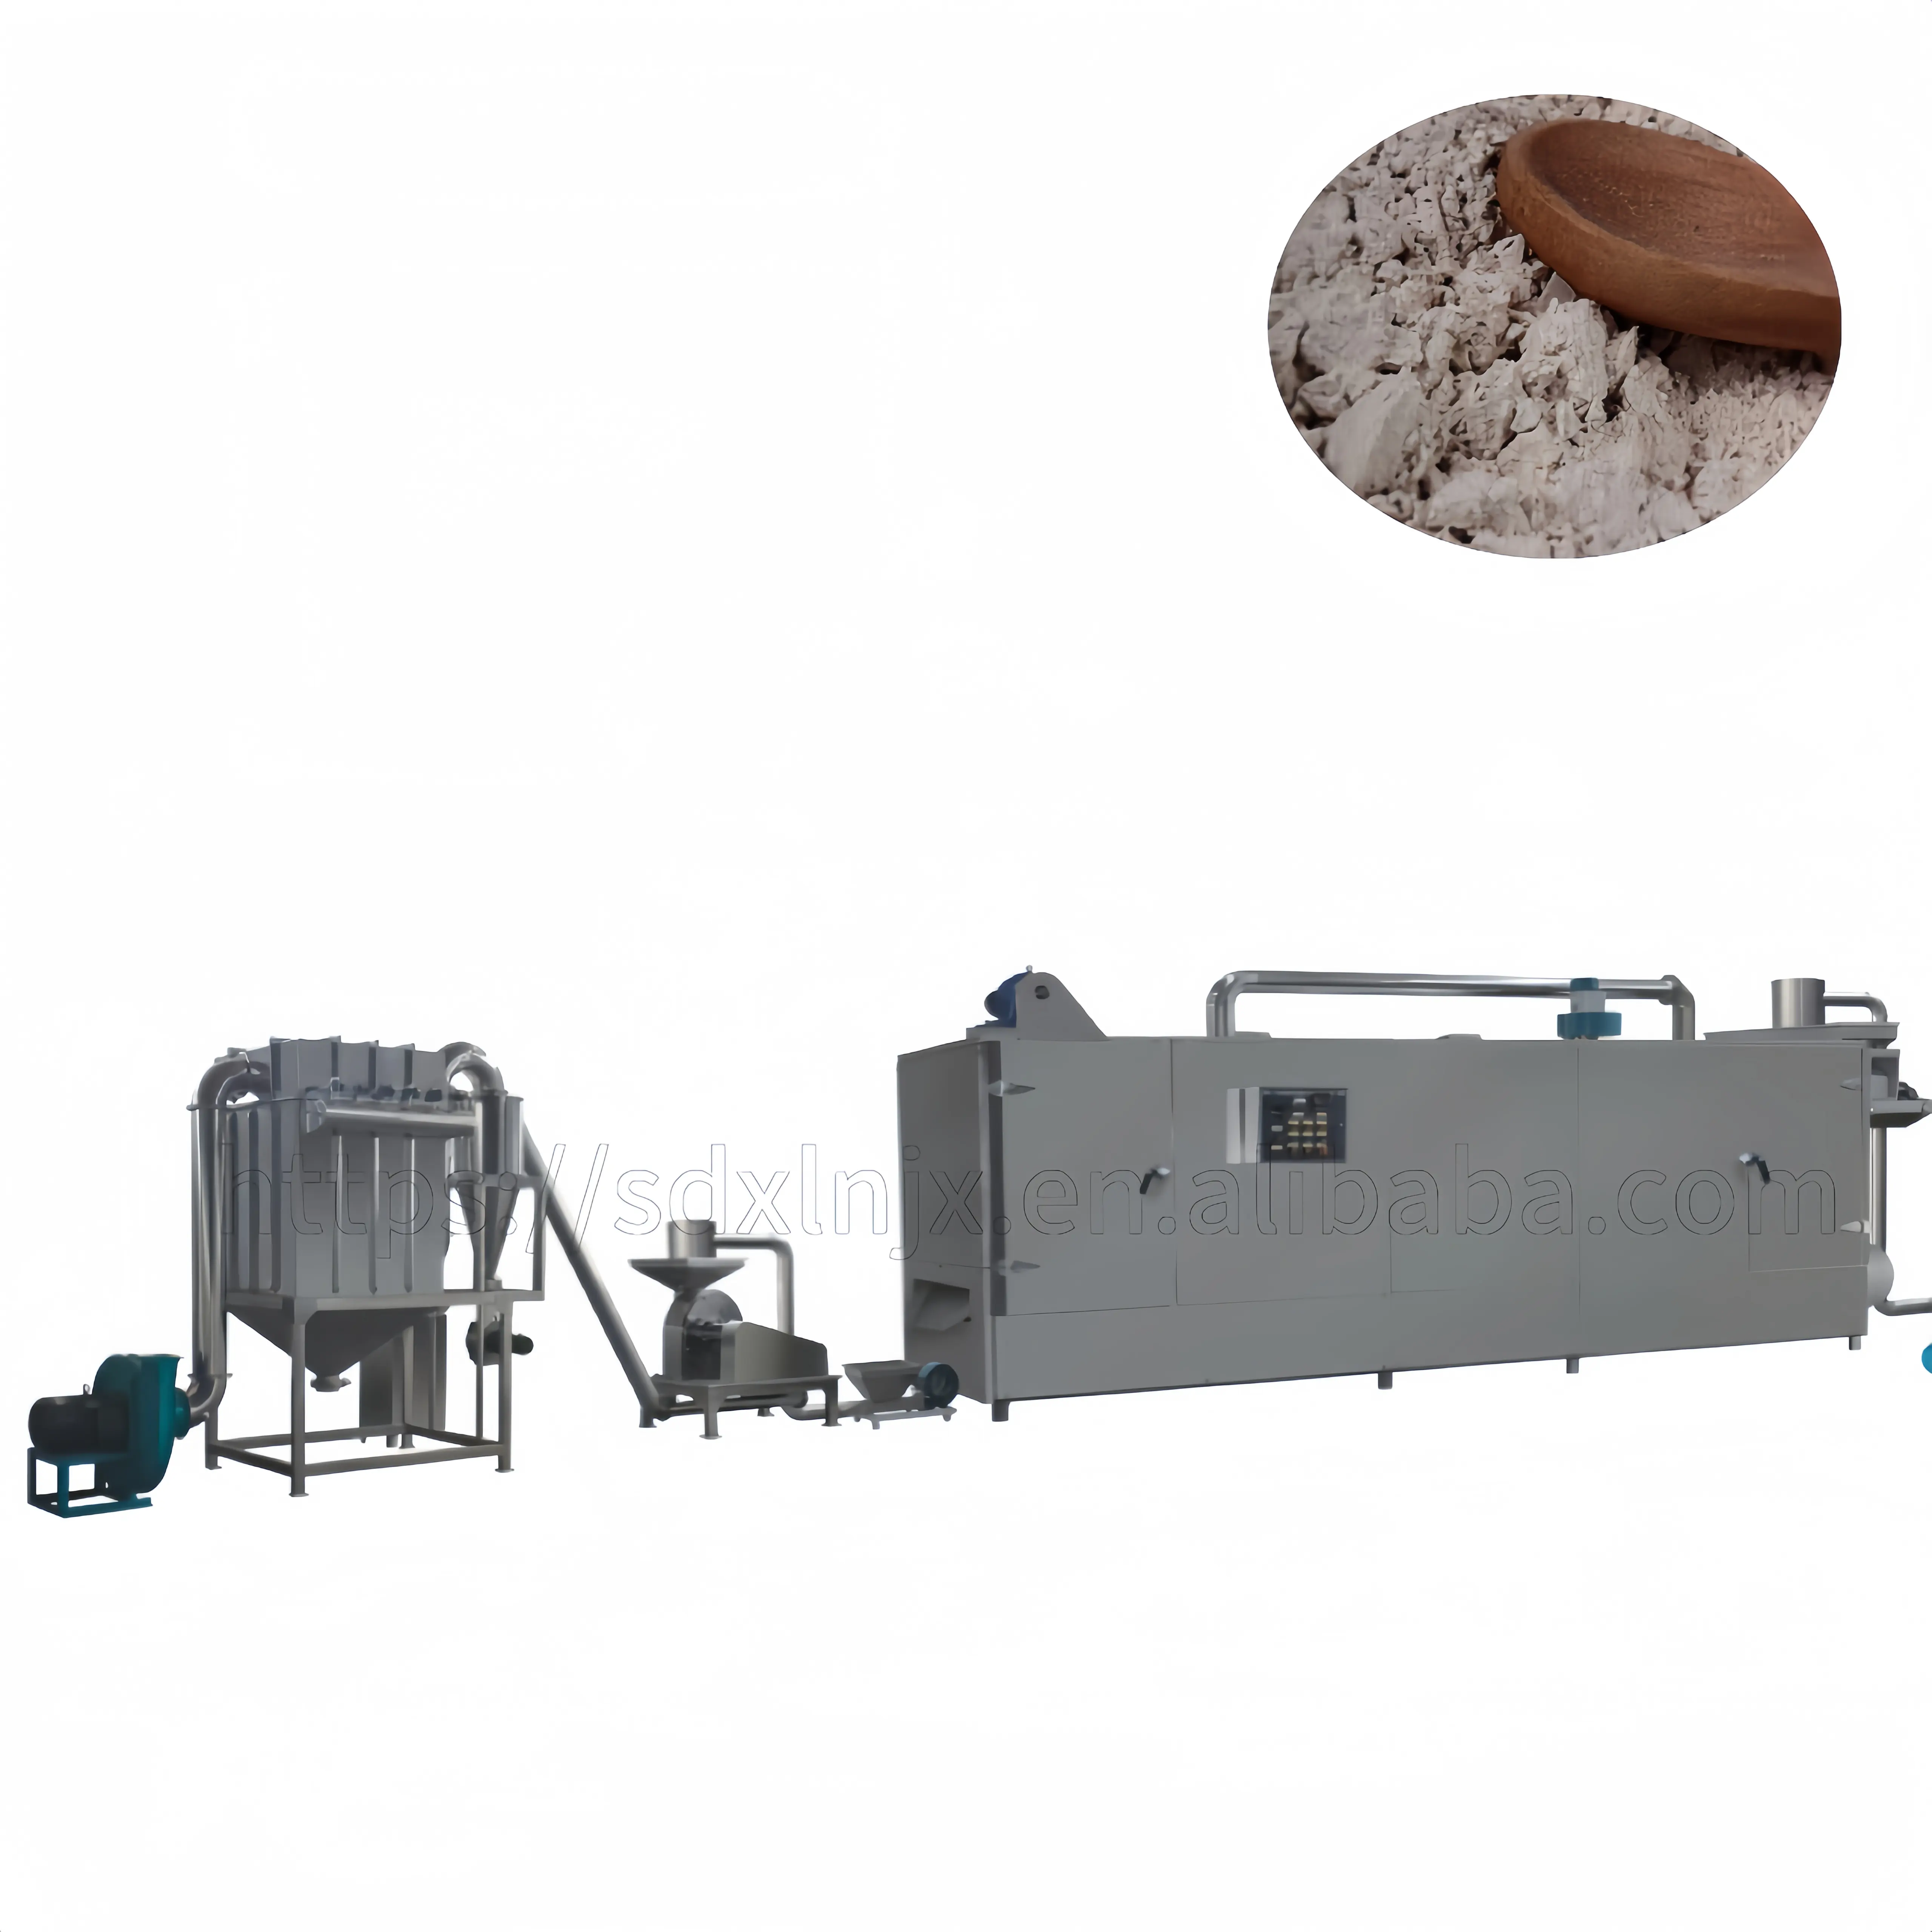 automatisierte nahrungspulver zuckerfreie maispaste produktionsanlage gepuffte getreide mehl ersatz pulvermaschine produktion